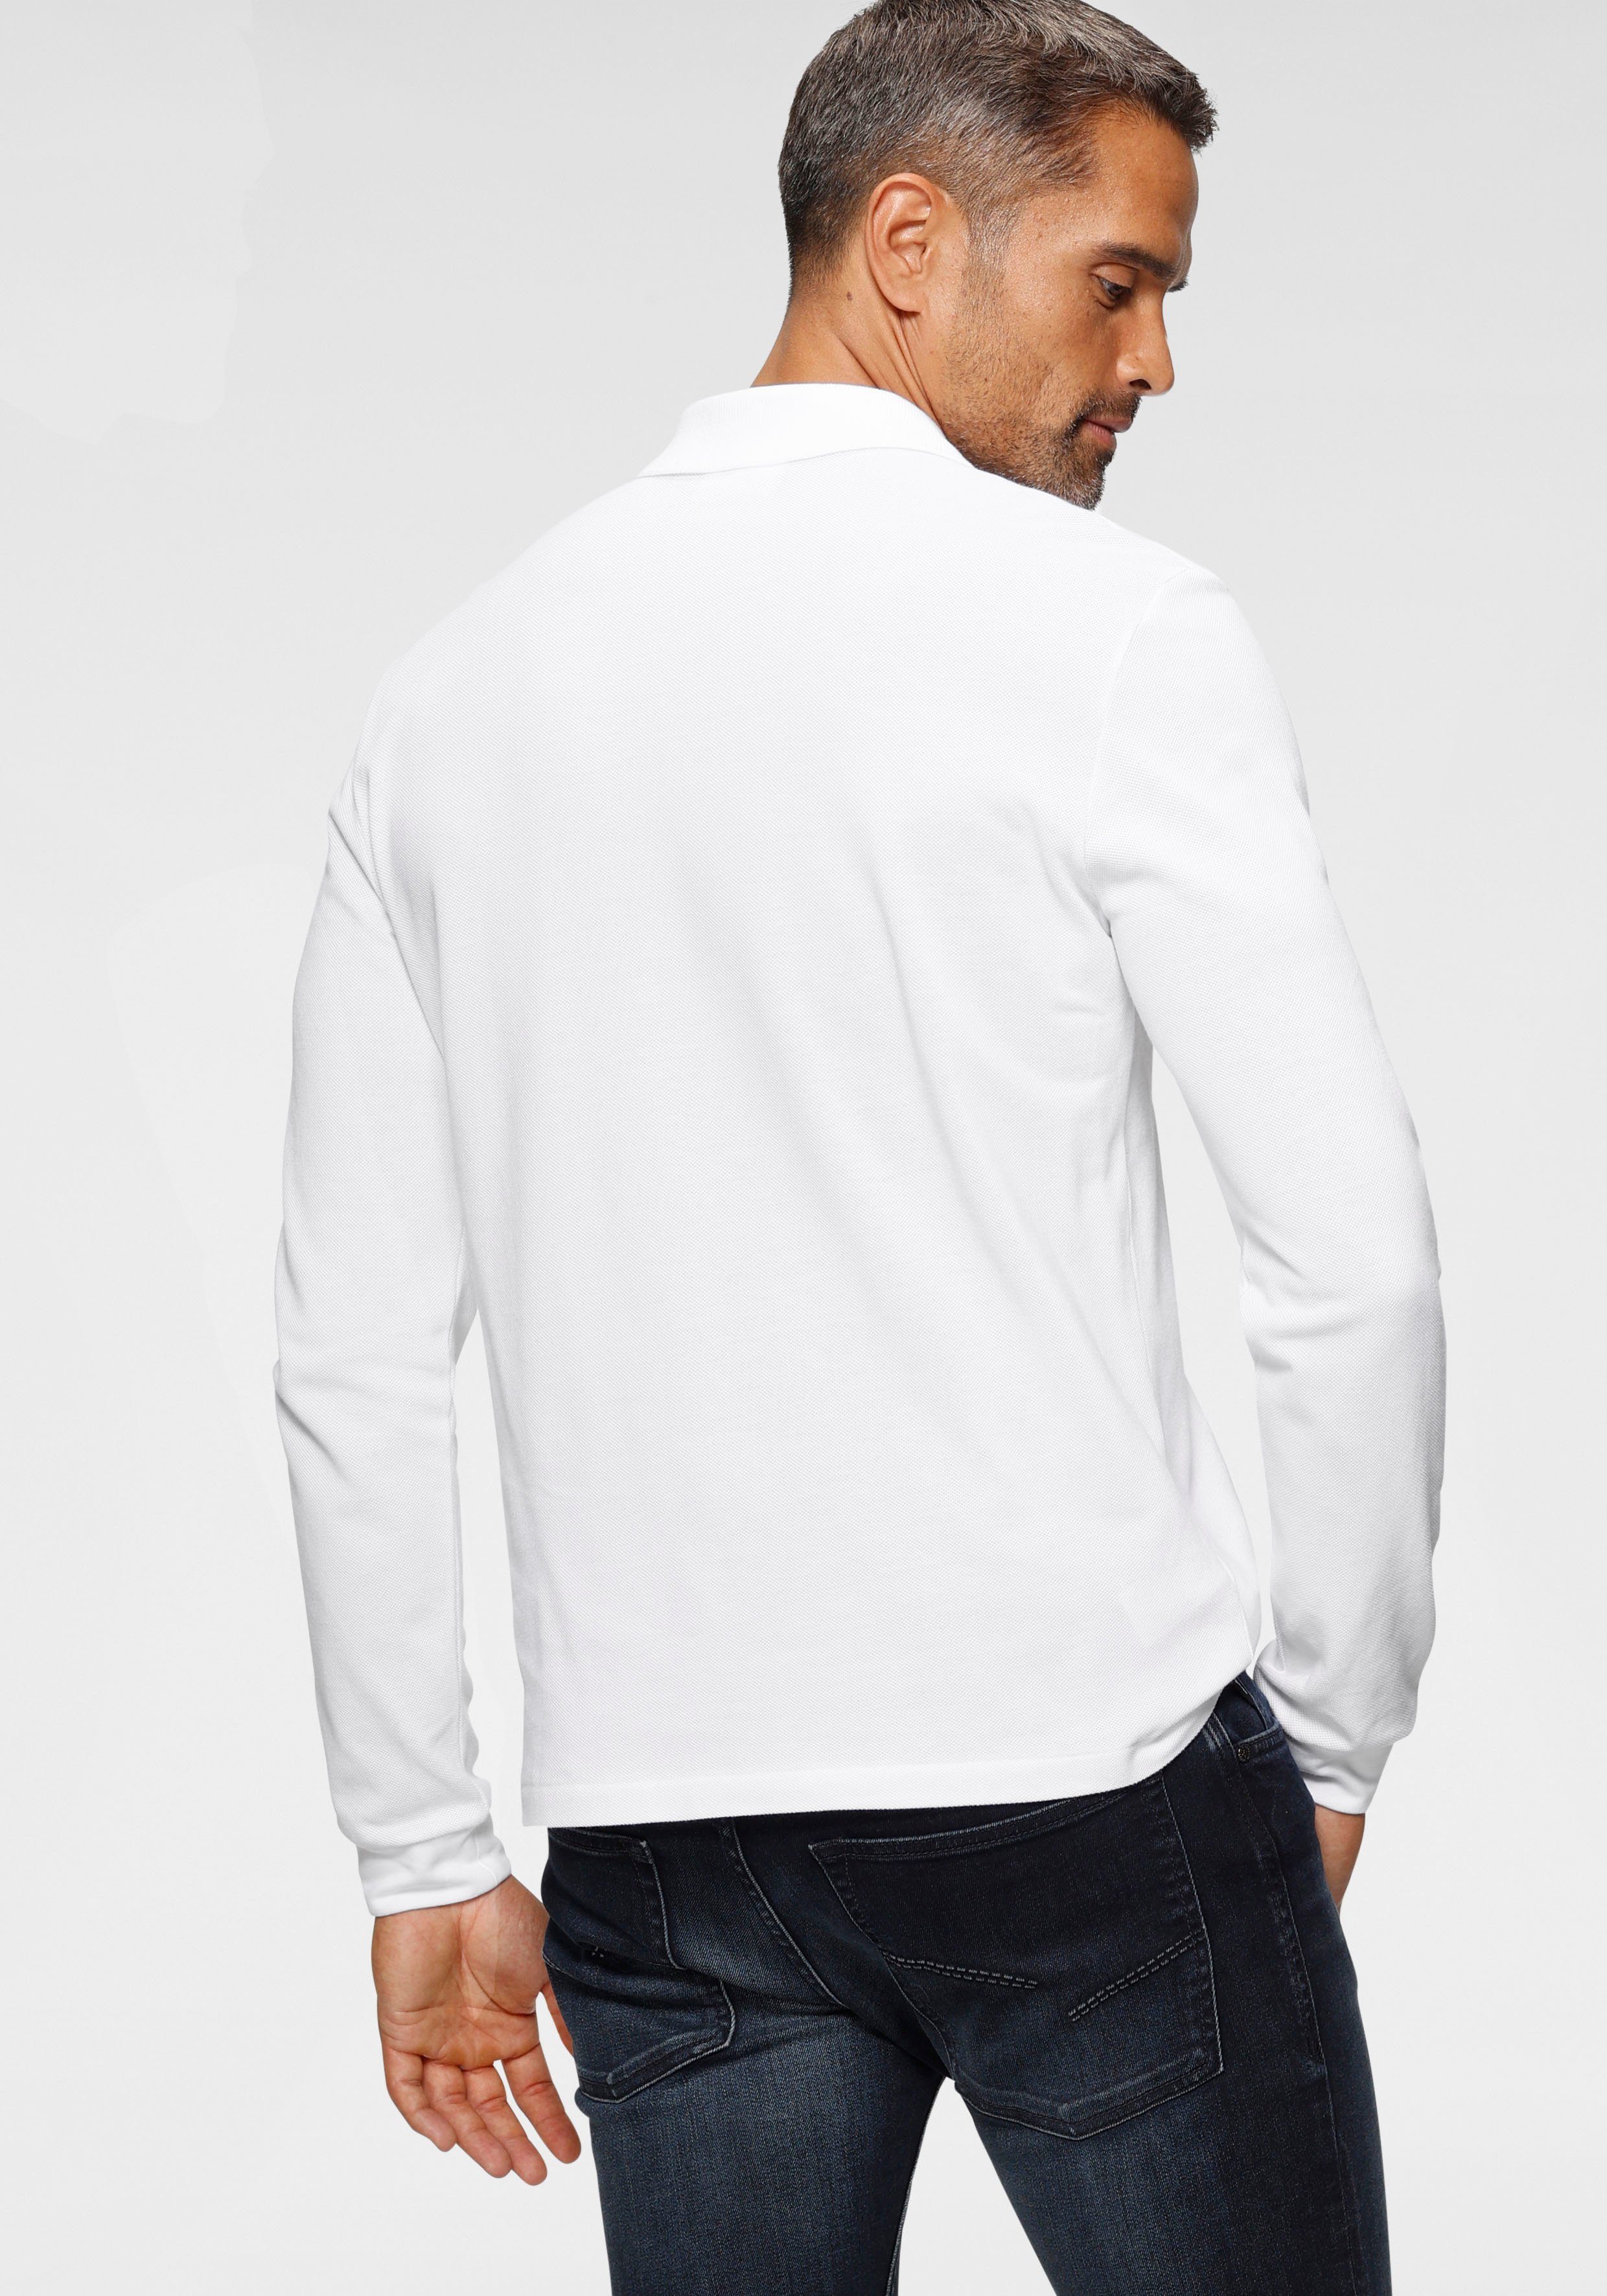 Lacoste Langarm-Poloshirt weiß Basic Style